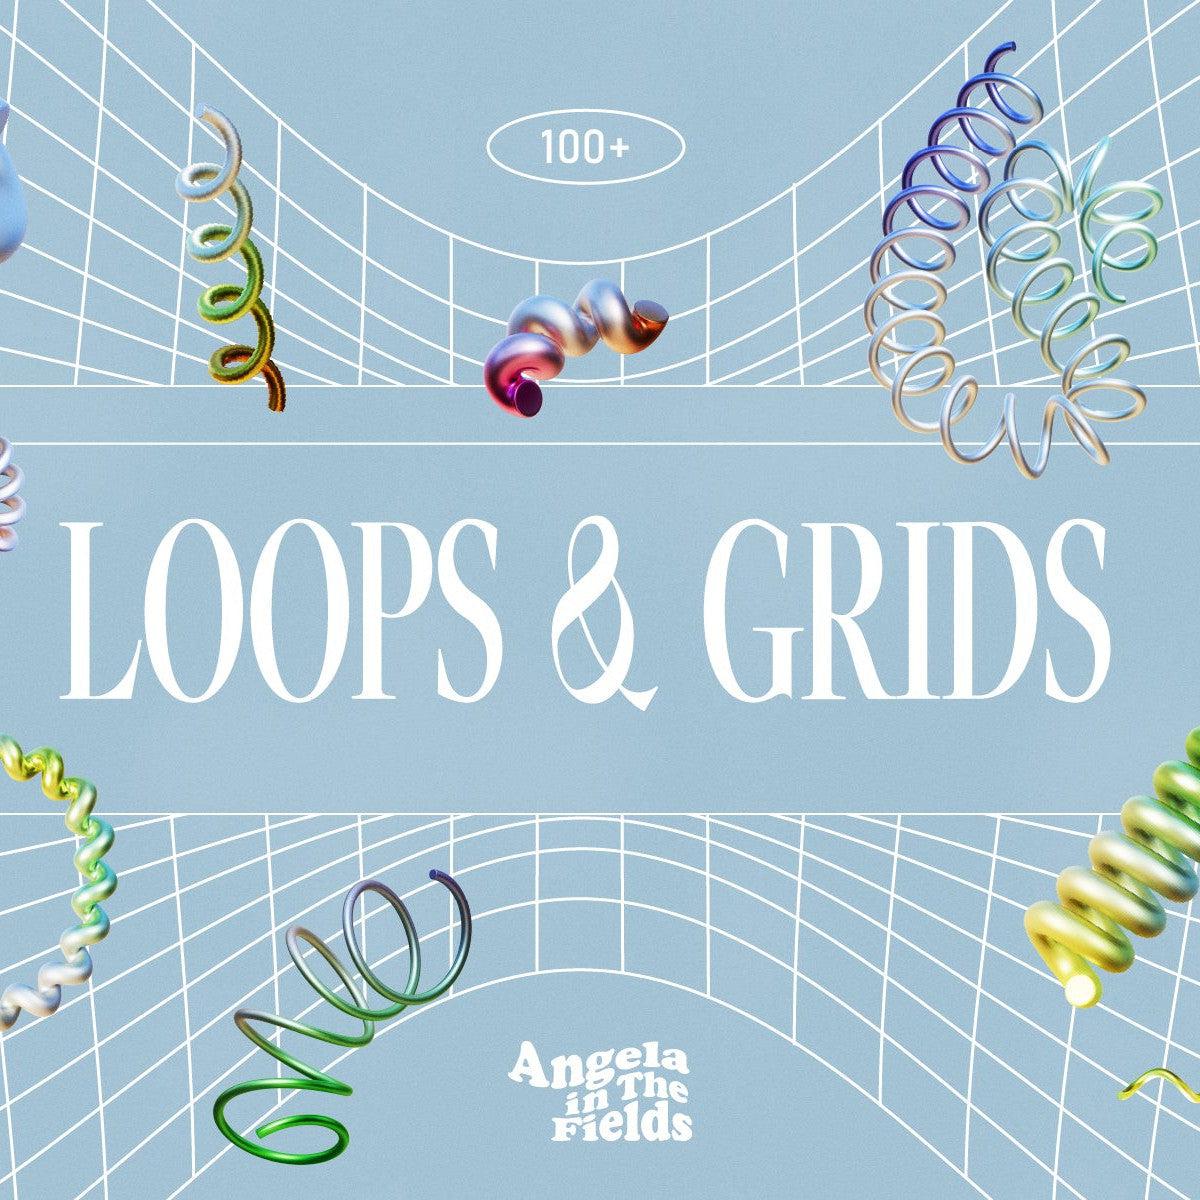 3D Loops & Grids